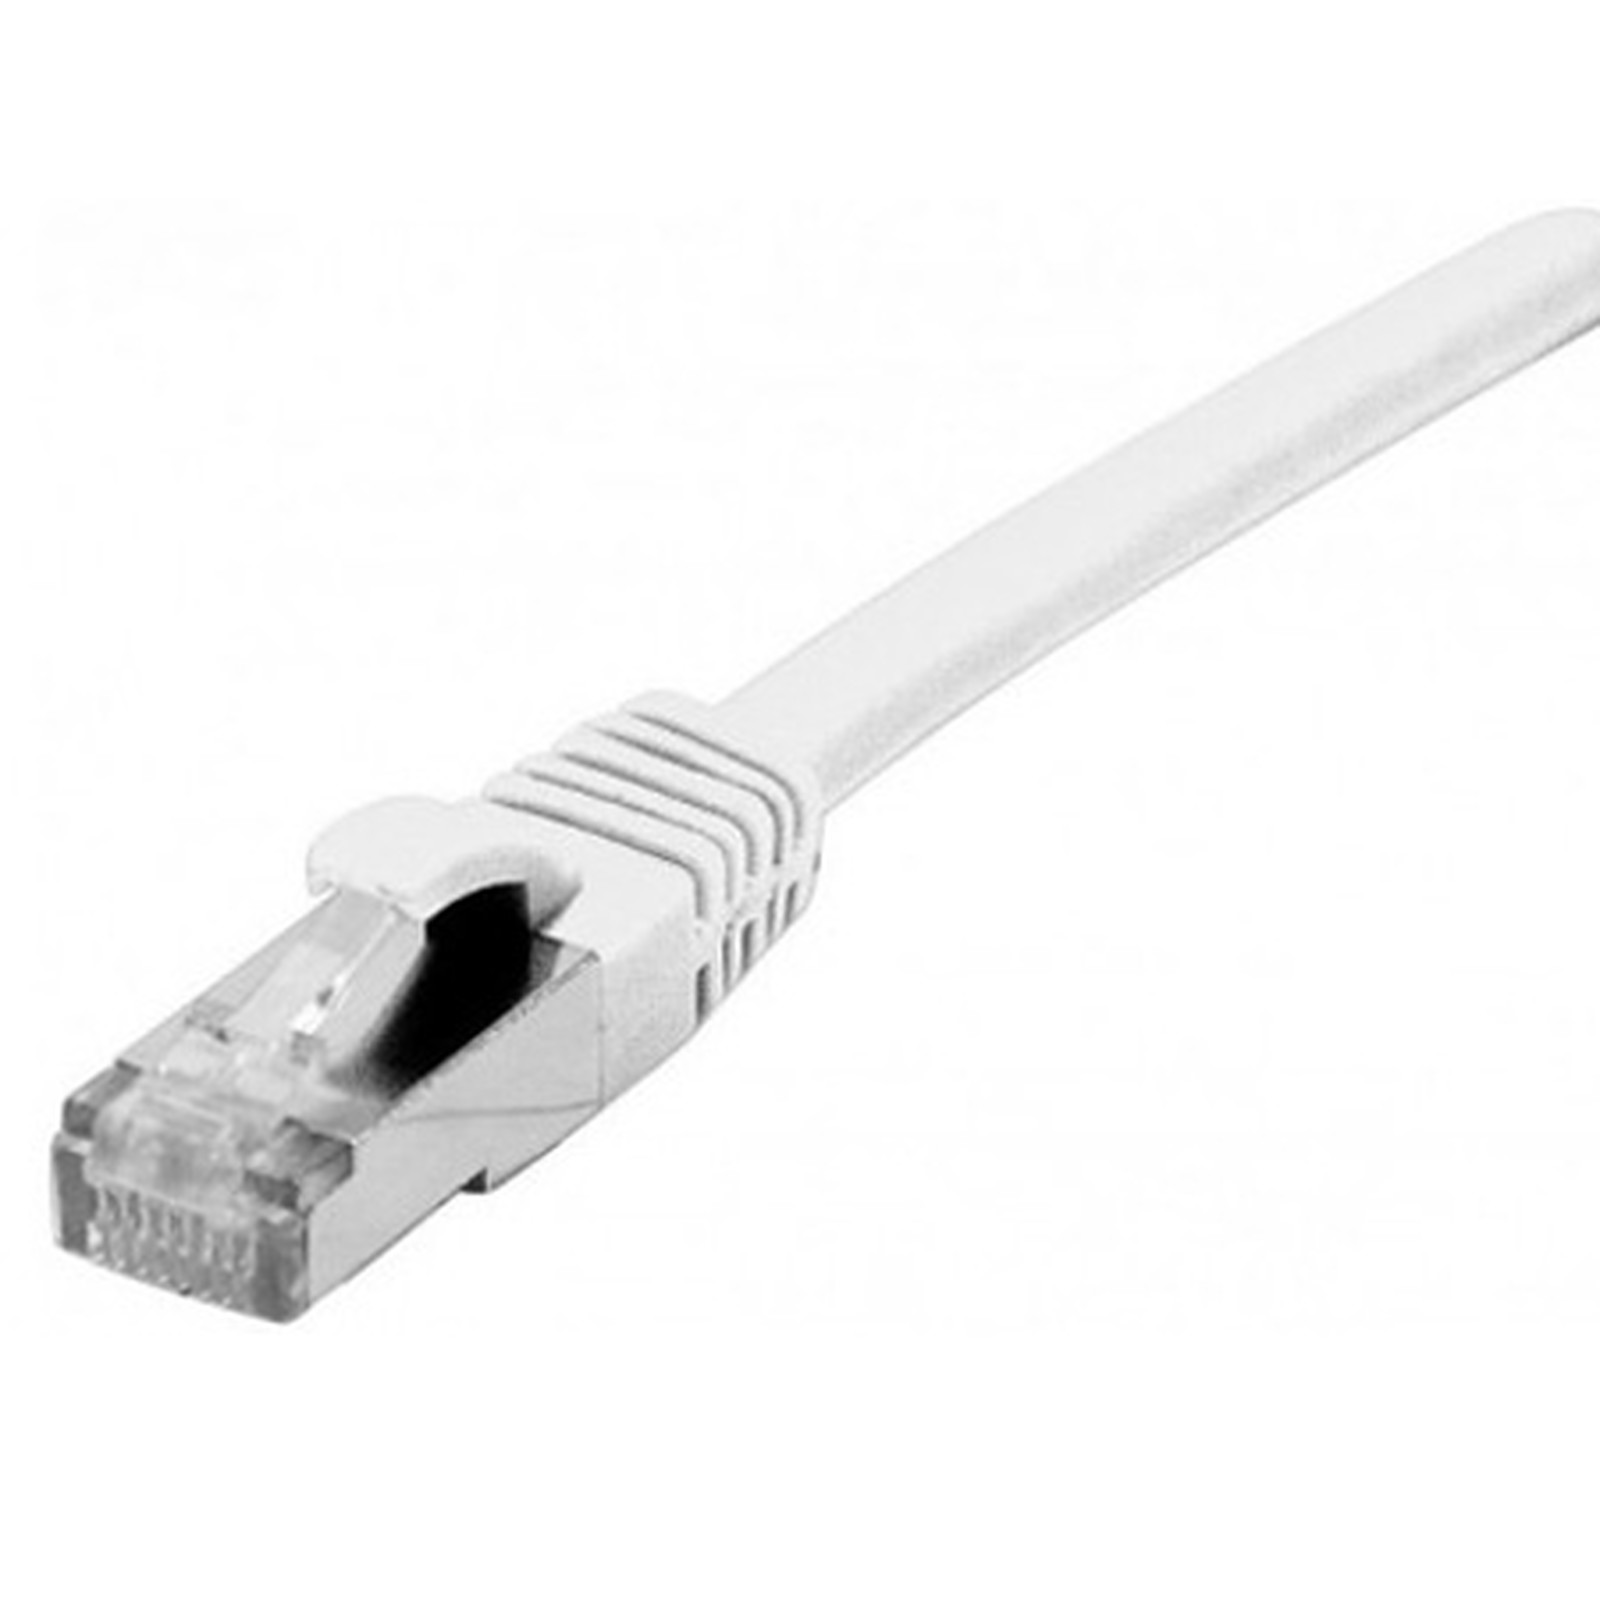 Cable RJ45 categorie 6 F/UTP 10 m (blanc) - Cable RJ45 Generique